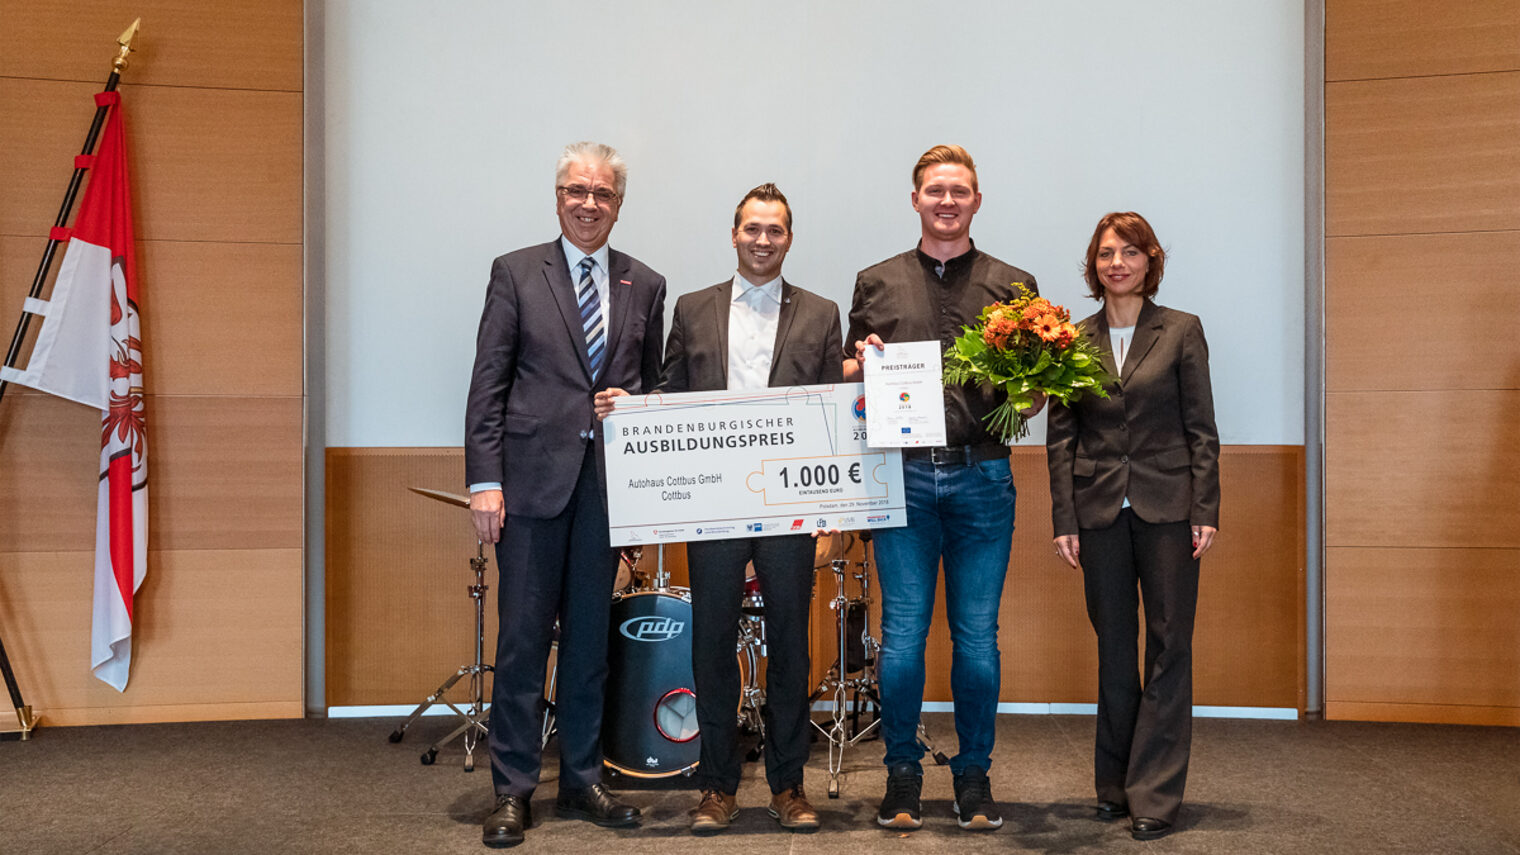 Landesausbildungspreis für die Autohaus Cottbus GmbH